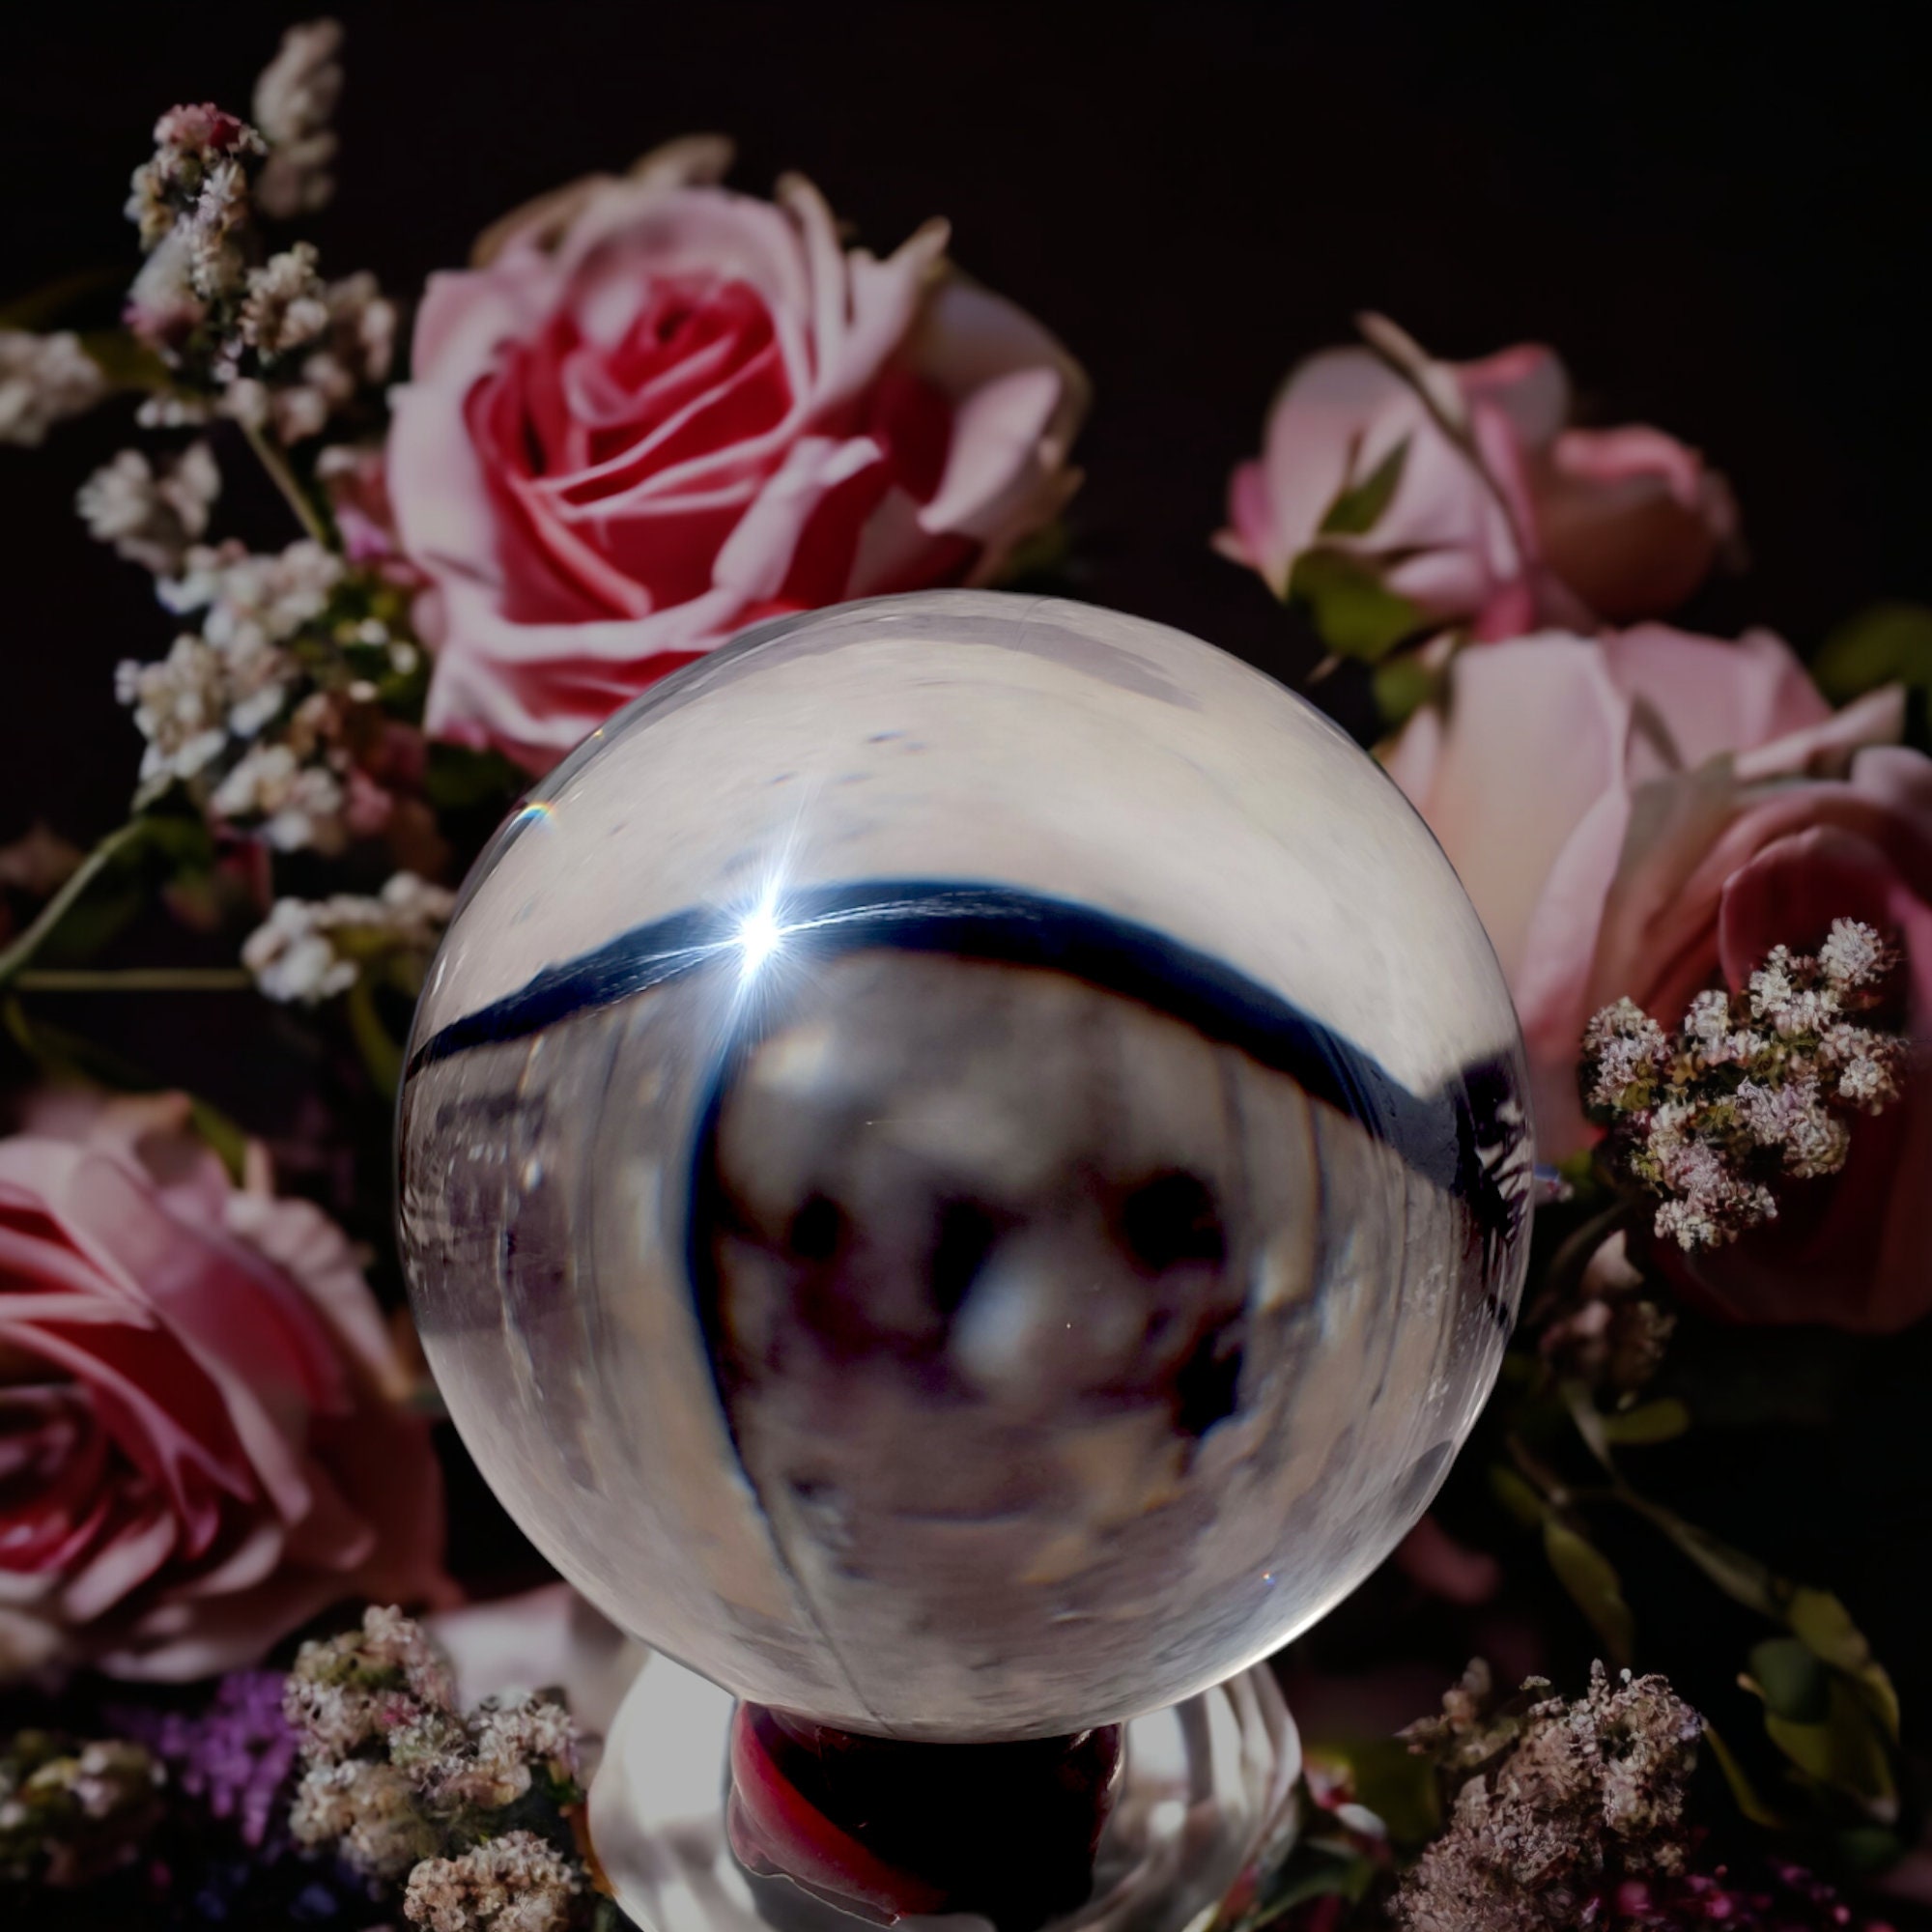 Décoration à vendre sphère personnalisée de Noël boule de cristal maison  avec Base en bois - Chine Boule décorative en cristal et boules en cristal  à vendre prix